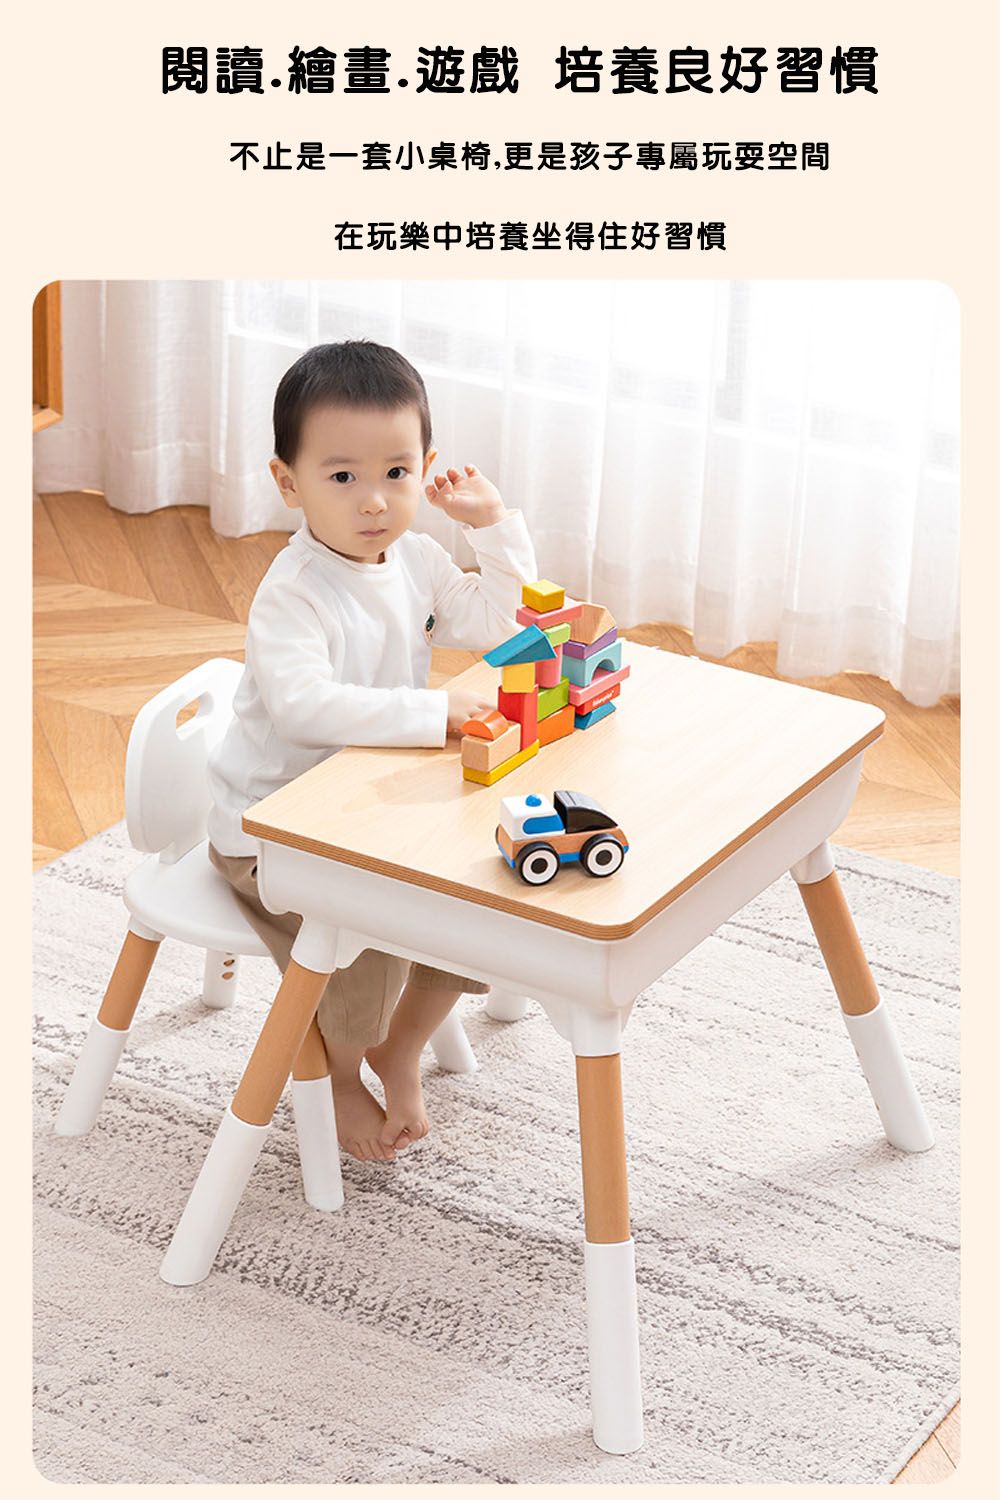 閱讀繪畫.遊戲 培養良好習慣不止是一套小桌椅,更是孩子專屬玩耍空間在玩樂中培養坐得住好習慣